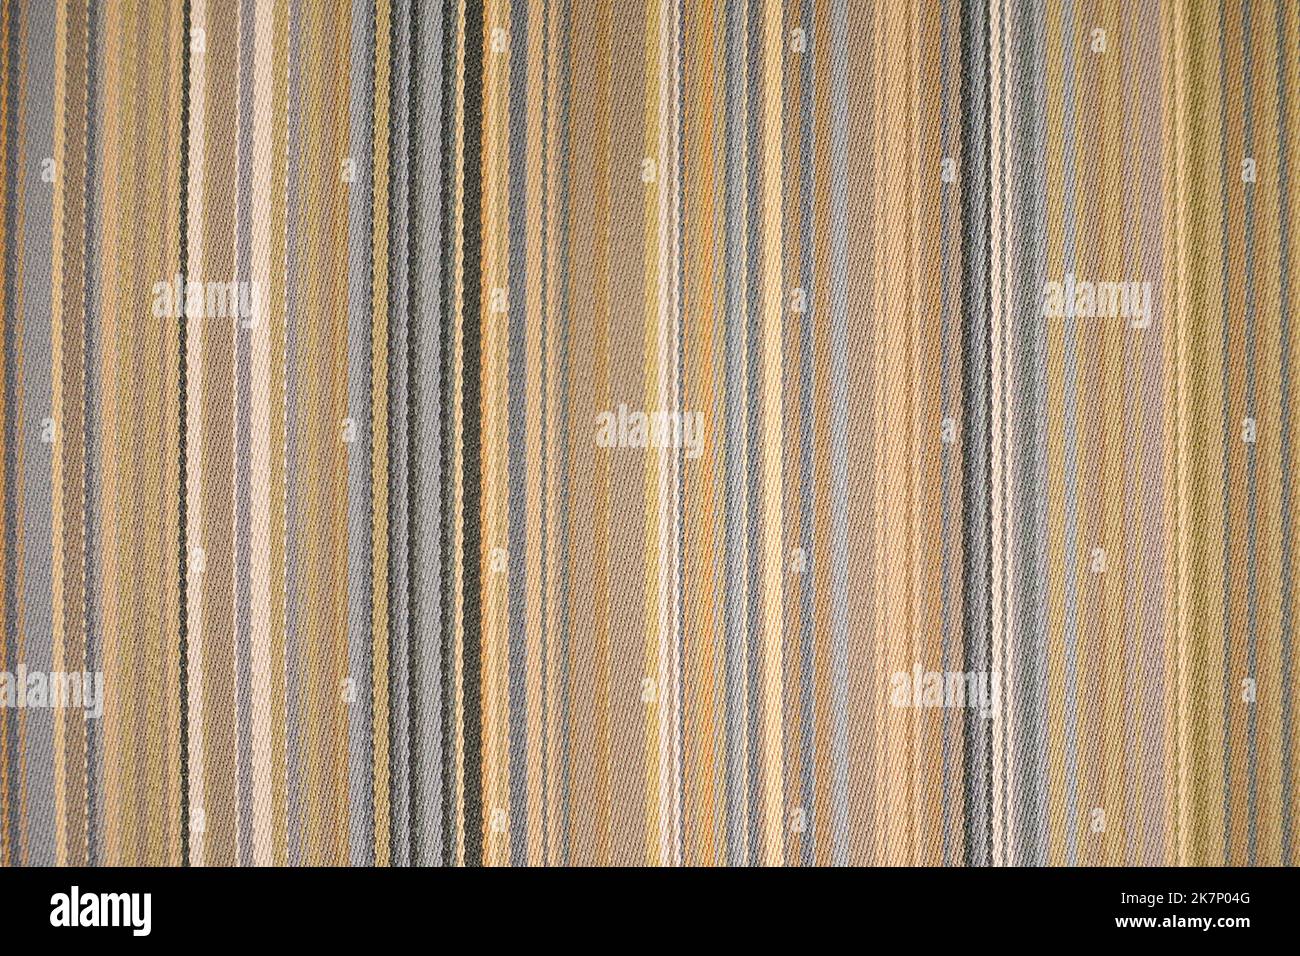 arrière-plan en tissu couleur terre avec des rayures verticales décolorées et douces de couleur arc-en-ciel Banque D'Images